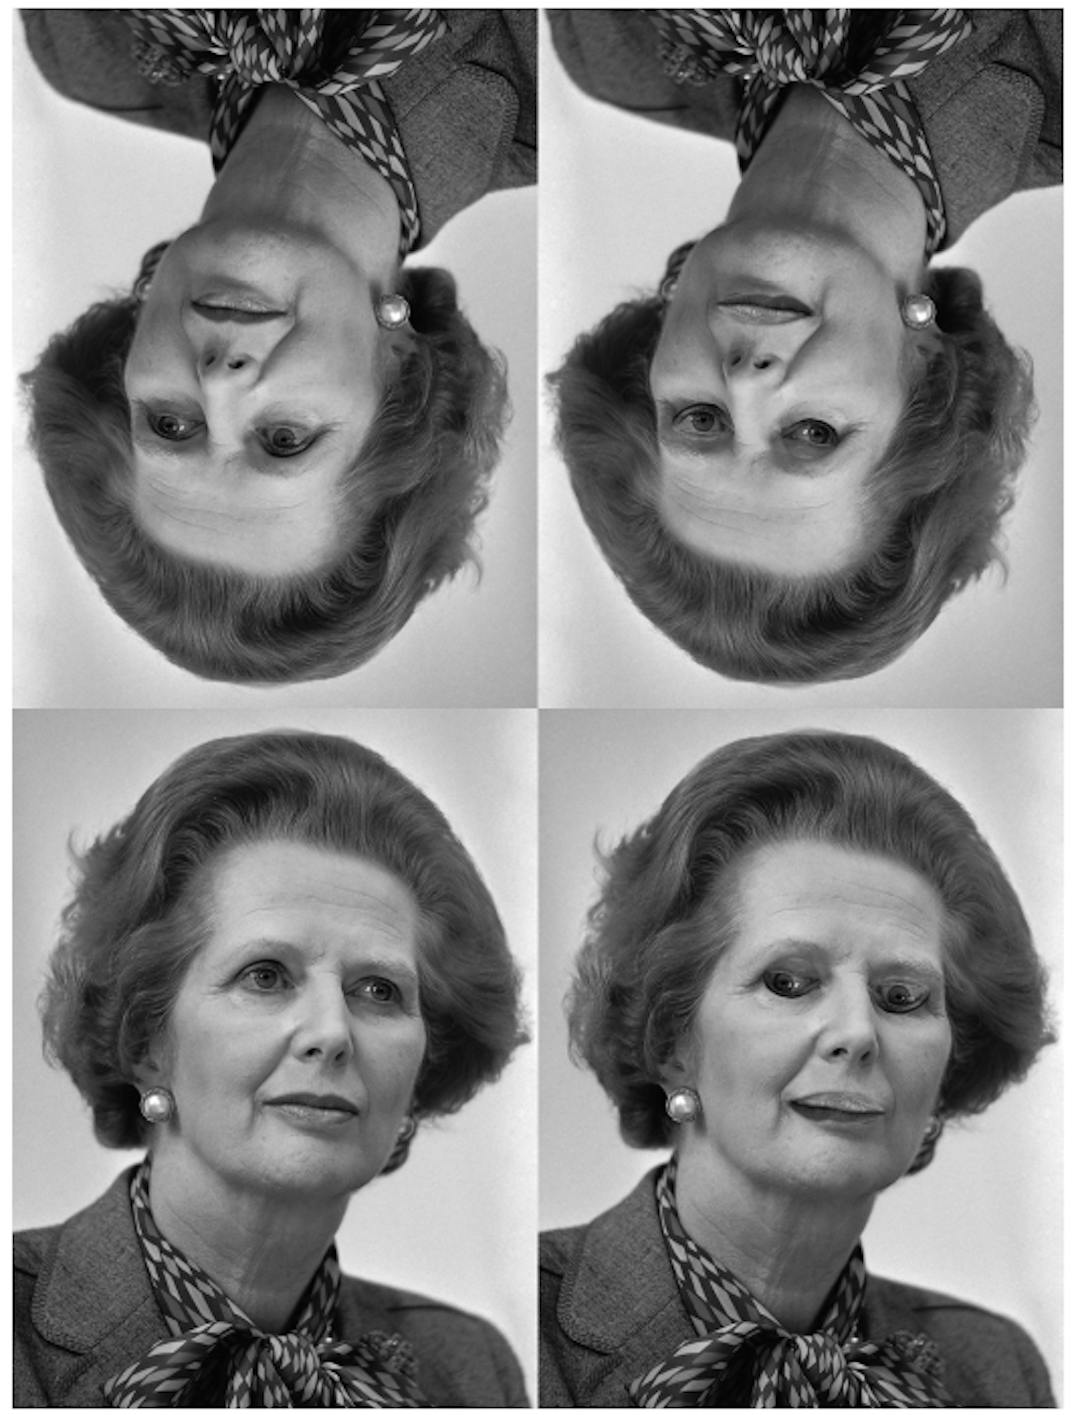 Şekil 4. Margaret Thatcher yanılsaması [31]: Üst sıradaki yüzler, alt sıradakilerin ters çevrilmiş versiyonlarıdır. Sağ alttaki göz ve ağzın içe dönmesi, yüz dik olduğunda belirgindir, ancak ters çevrildiğinde görülmez. (Kredi: Rob Bogaerts/Anefo https://commons.wikimedia.org/w/index.php? curid=79649613))